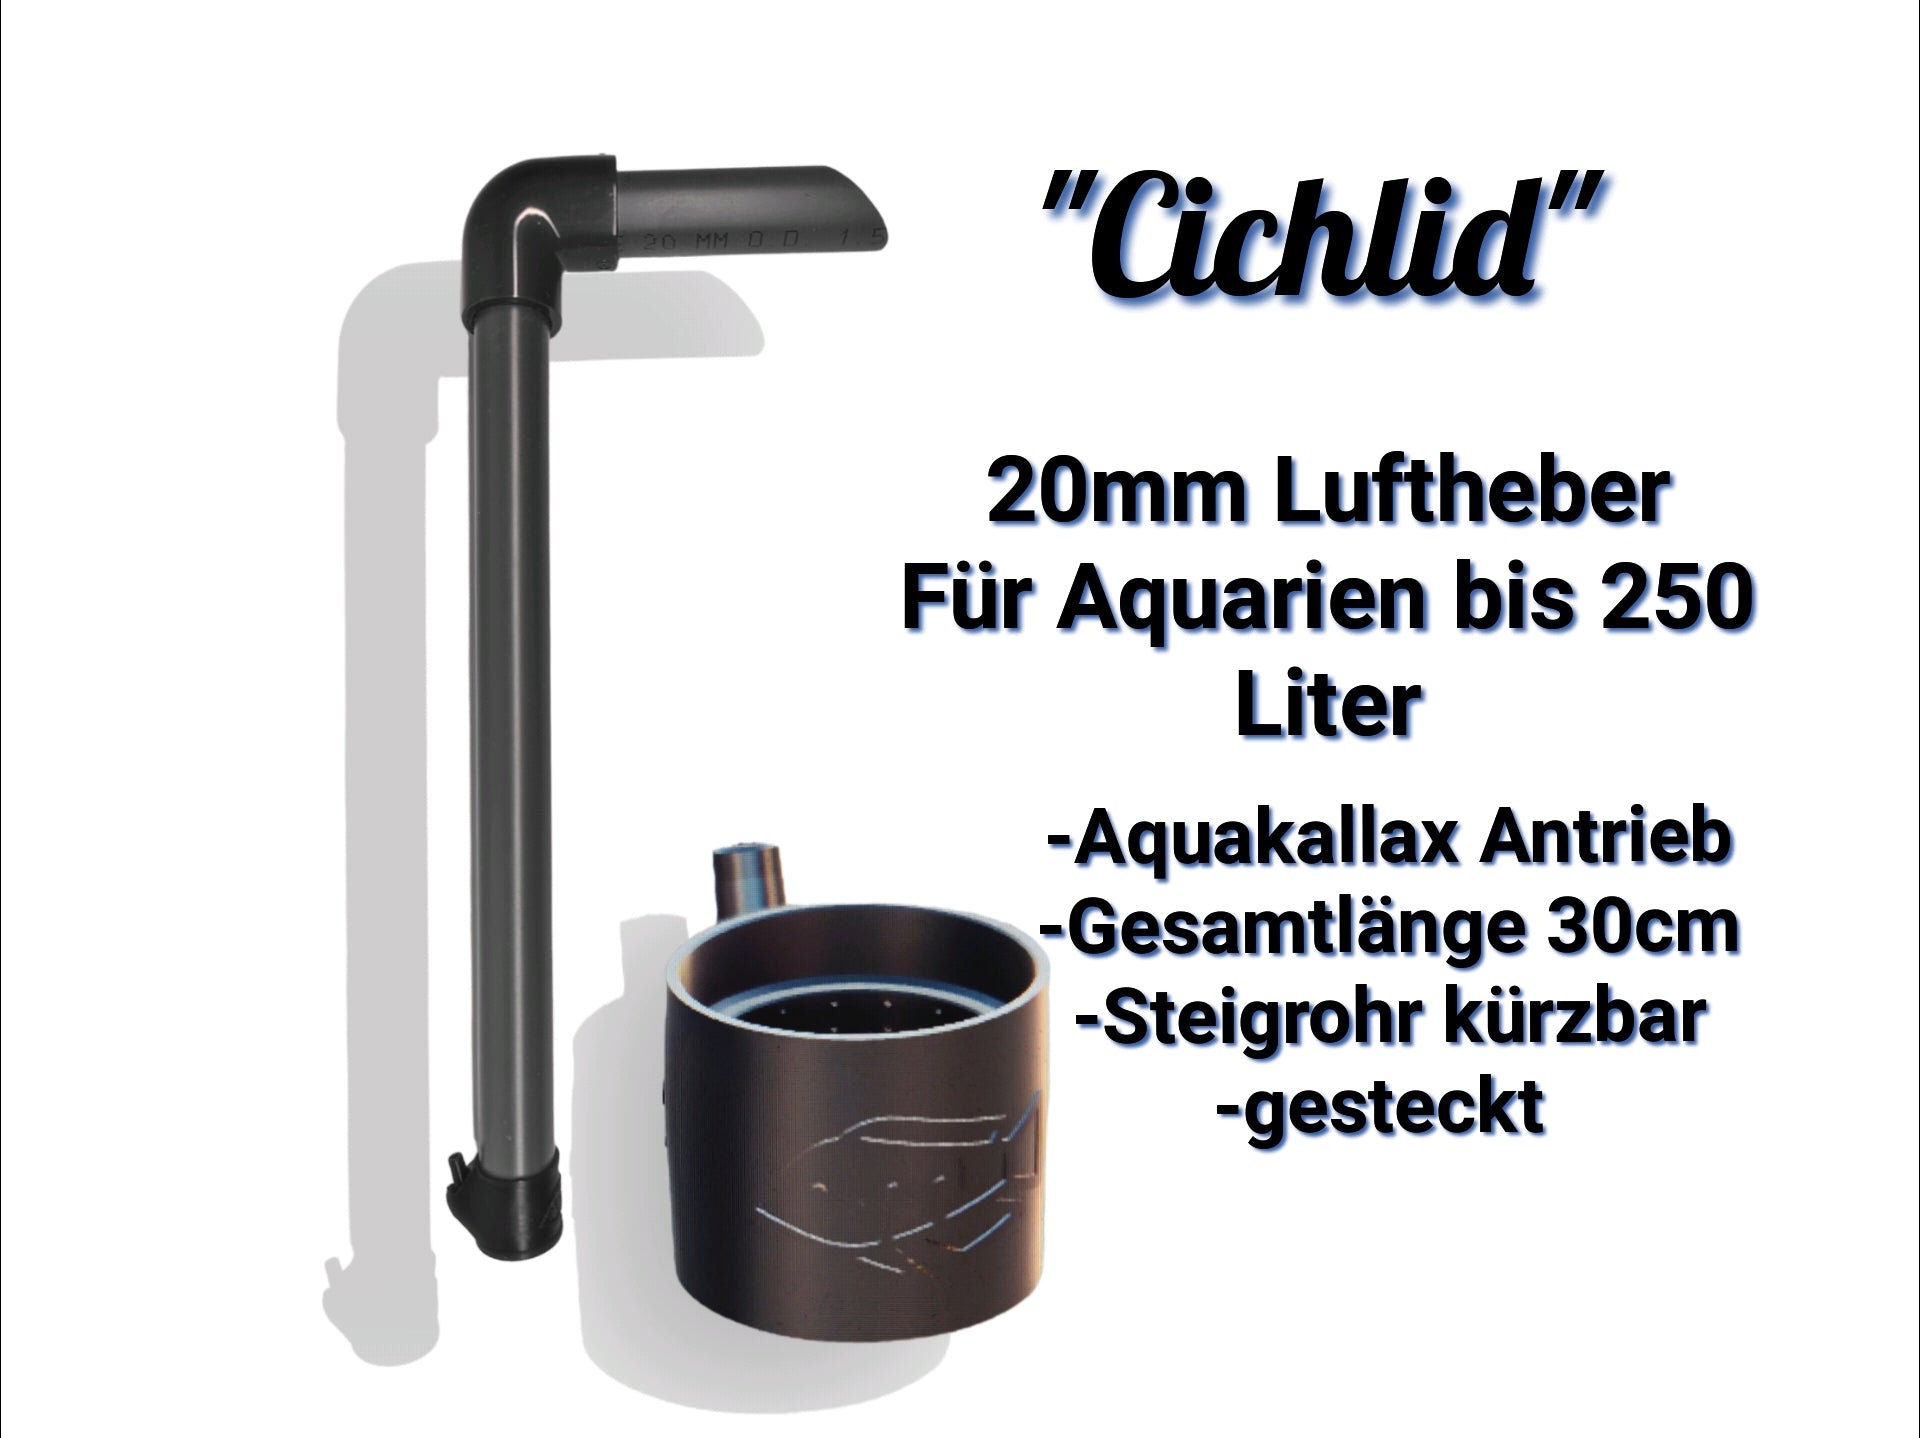 Der Aquakallax Luftheber mit 20mm "Cichlid" Antriebsteil. Für Aquarien bis 250 Liter geeignet. Gesamtlänge 30cm, kürzbares Steigrohr, gesteckte Version